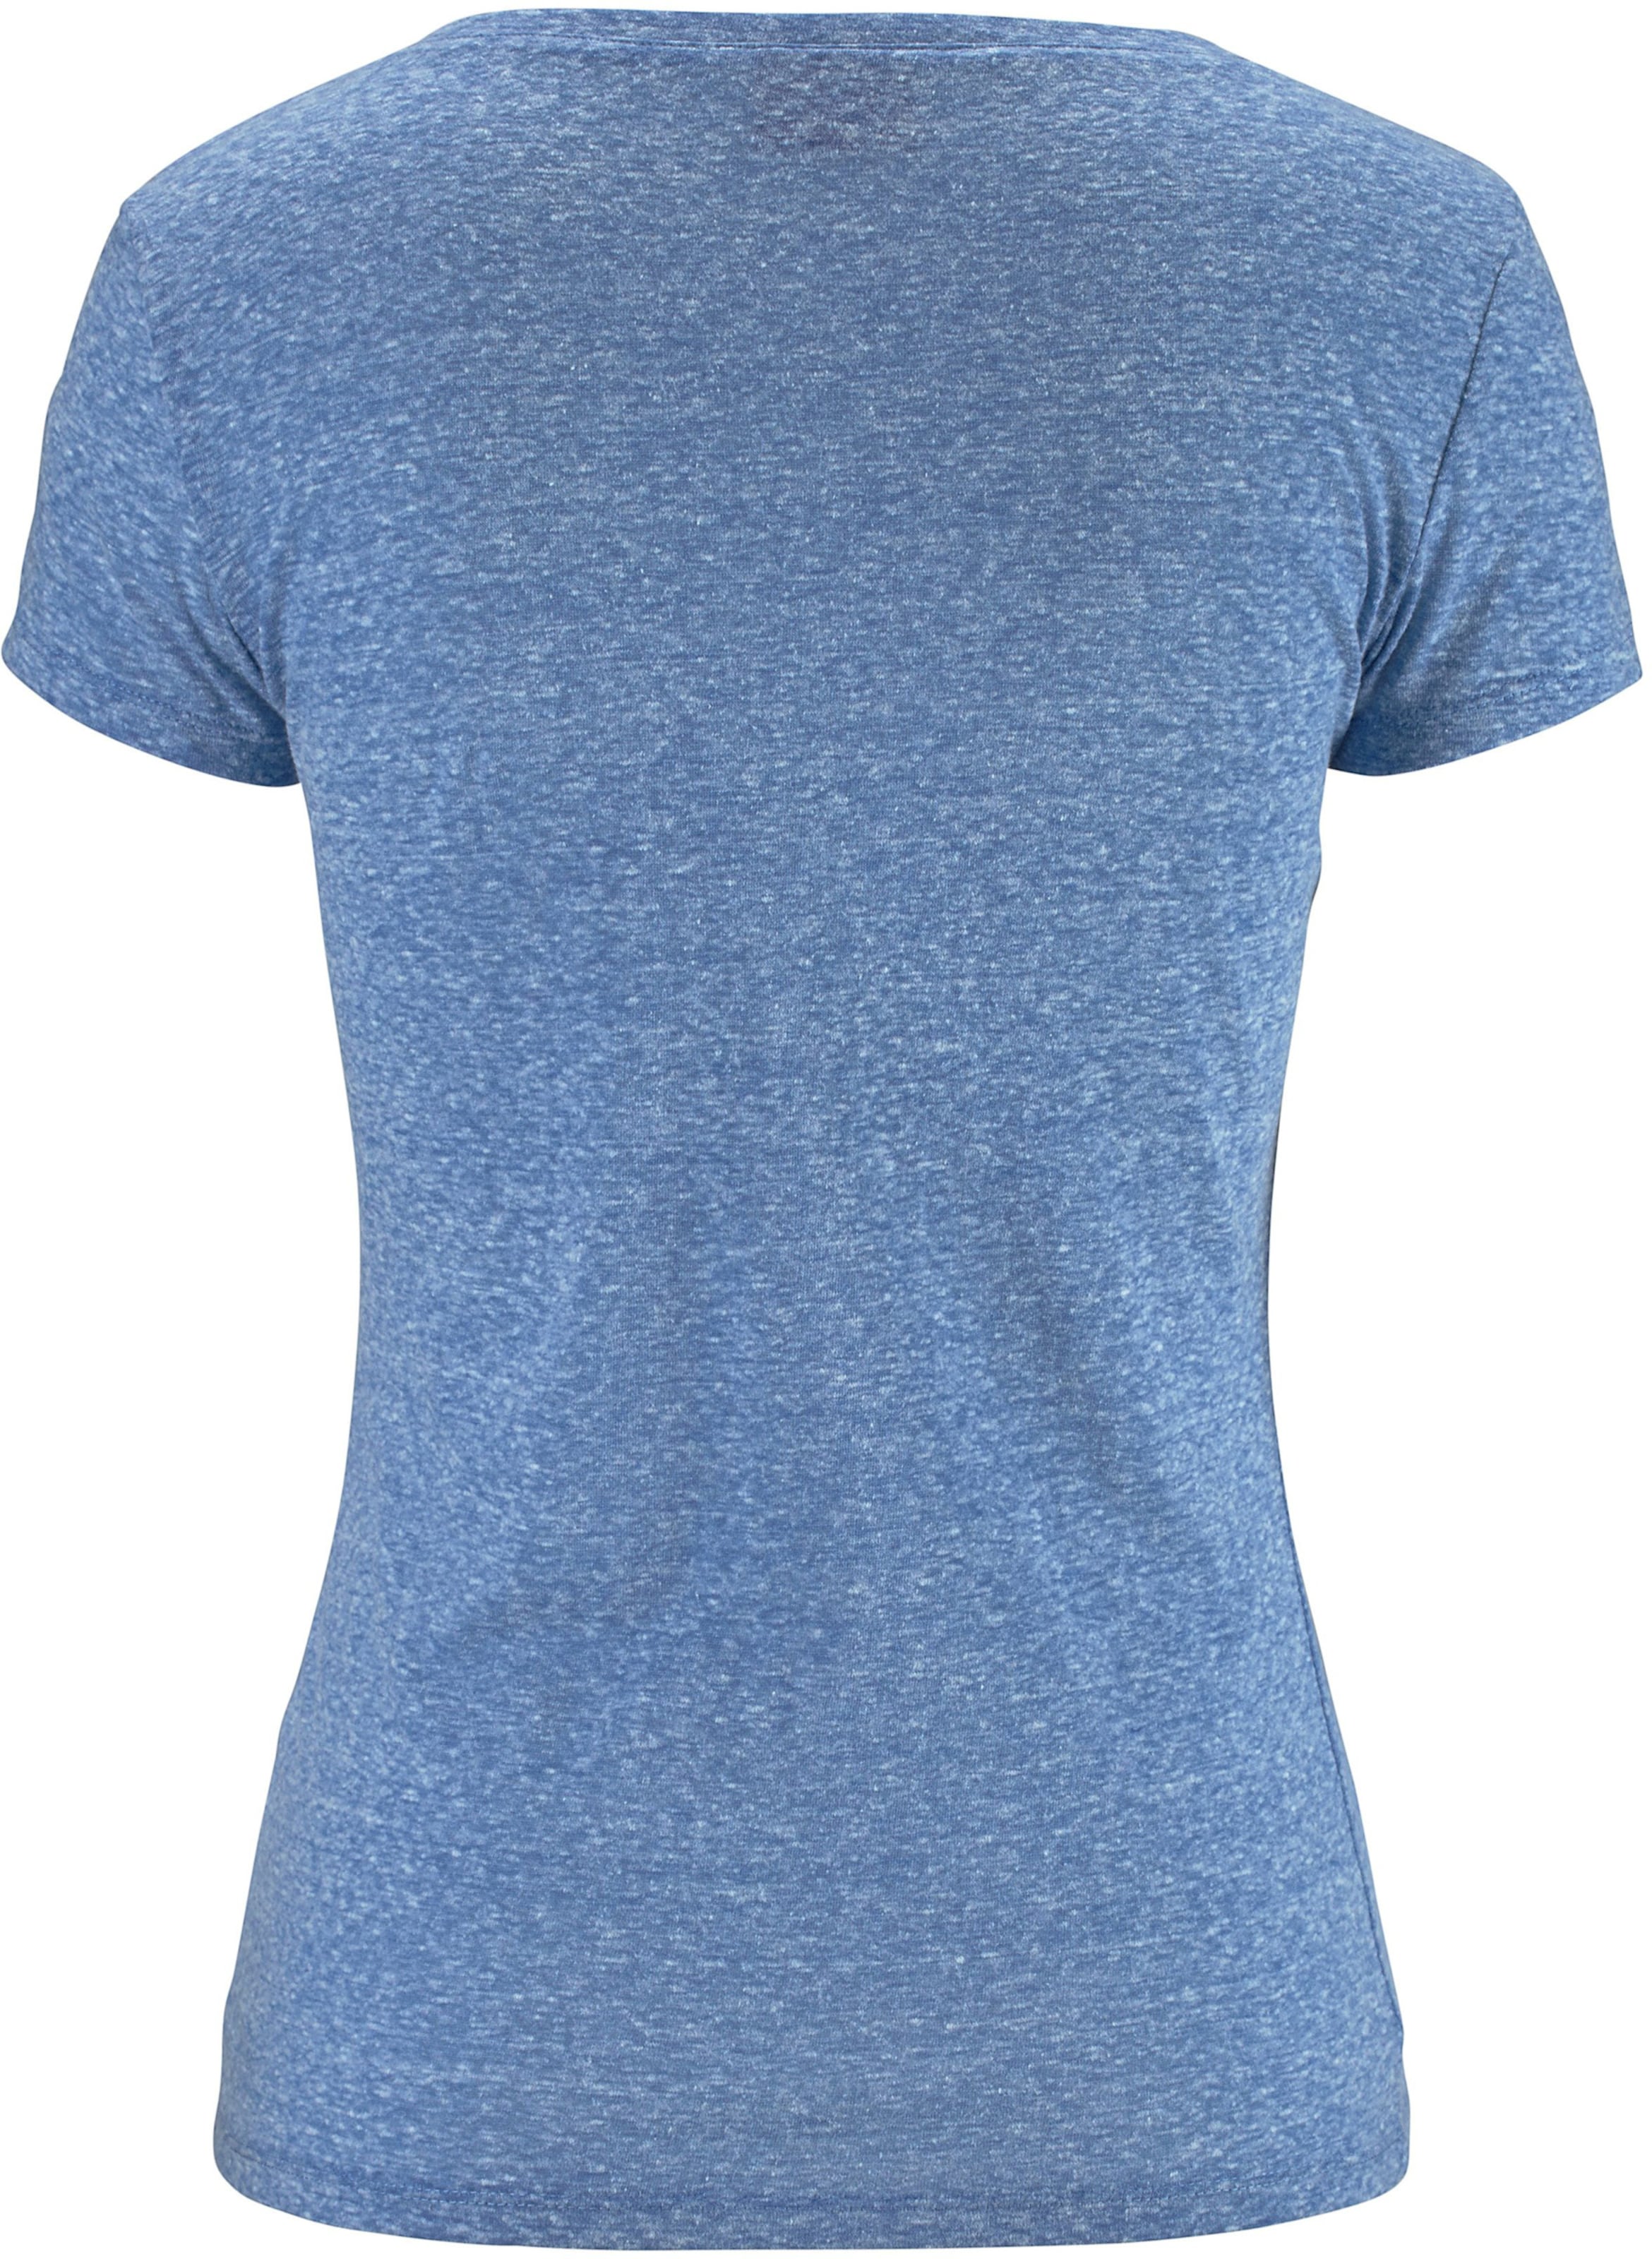 auf 40 günstig Kaufen-Strandshirt in blau-meliert von Venice Beach. Strandshirt in blau-meliert von Venice Beach <![CDATA[Mit V-Ausschnitt in schönem Mélange-Effekt. Mit Print auf der Brust. Aus 60% Baumwolle, 40% Polyester.]]>. 